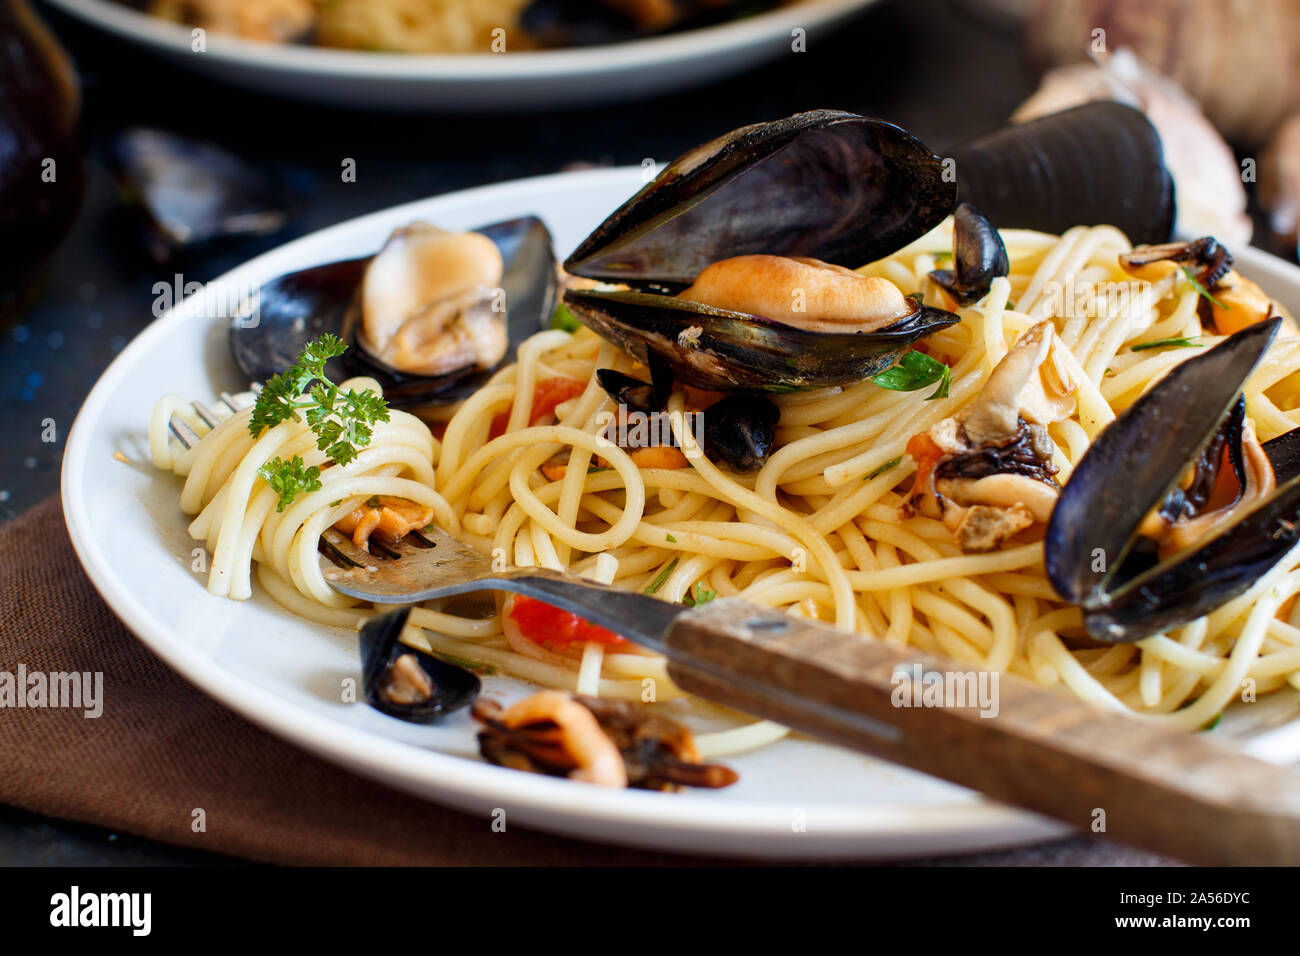 Spaghetti mit Muscheln und Tomaten italienisch Meeresfrüchte pasta Close up Stockfoto